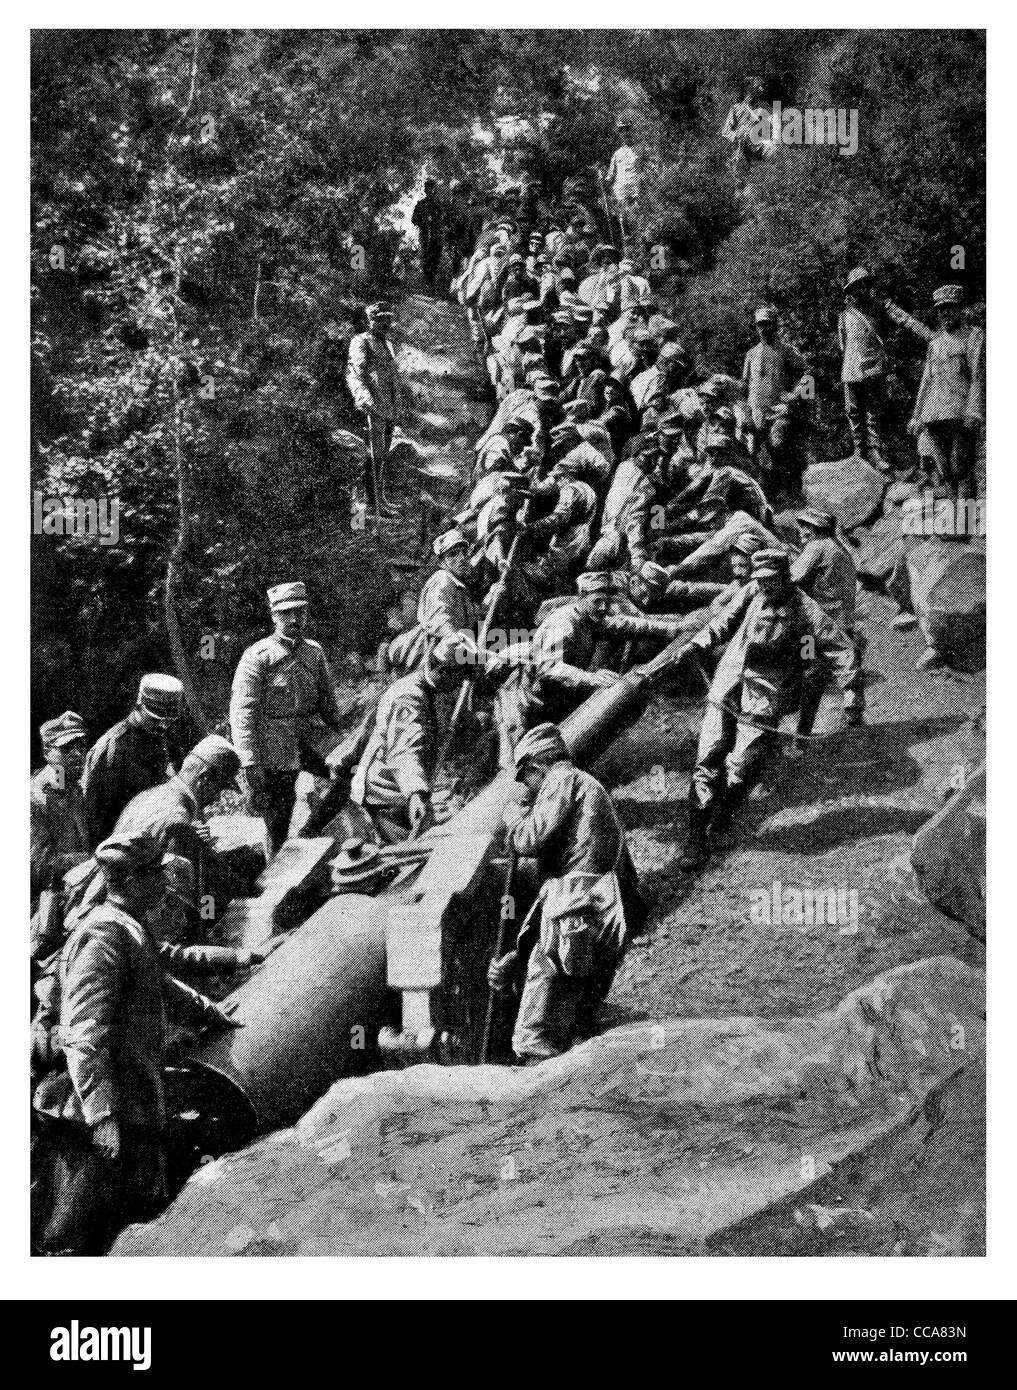 1915 Kampagne schwere Waffen Italienisch Alpine geschleppt Artillerie Mann macht Schlepper ziehen ziehen Berg Kriegsführung Kanone "Gunners" Kanonier Stockfoto